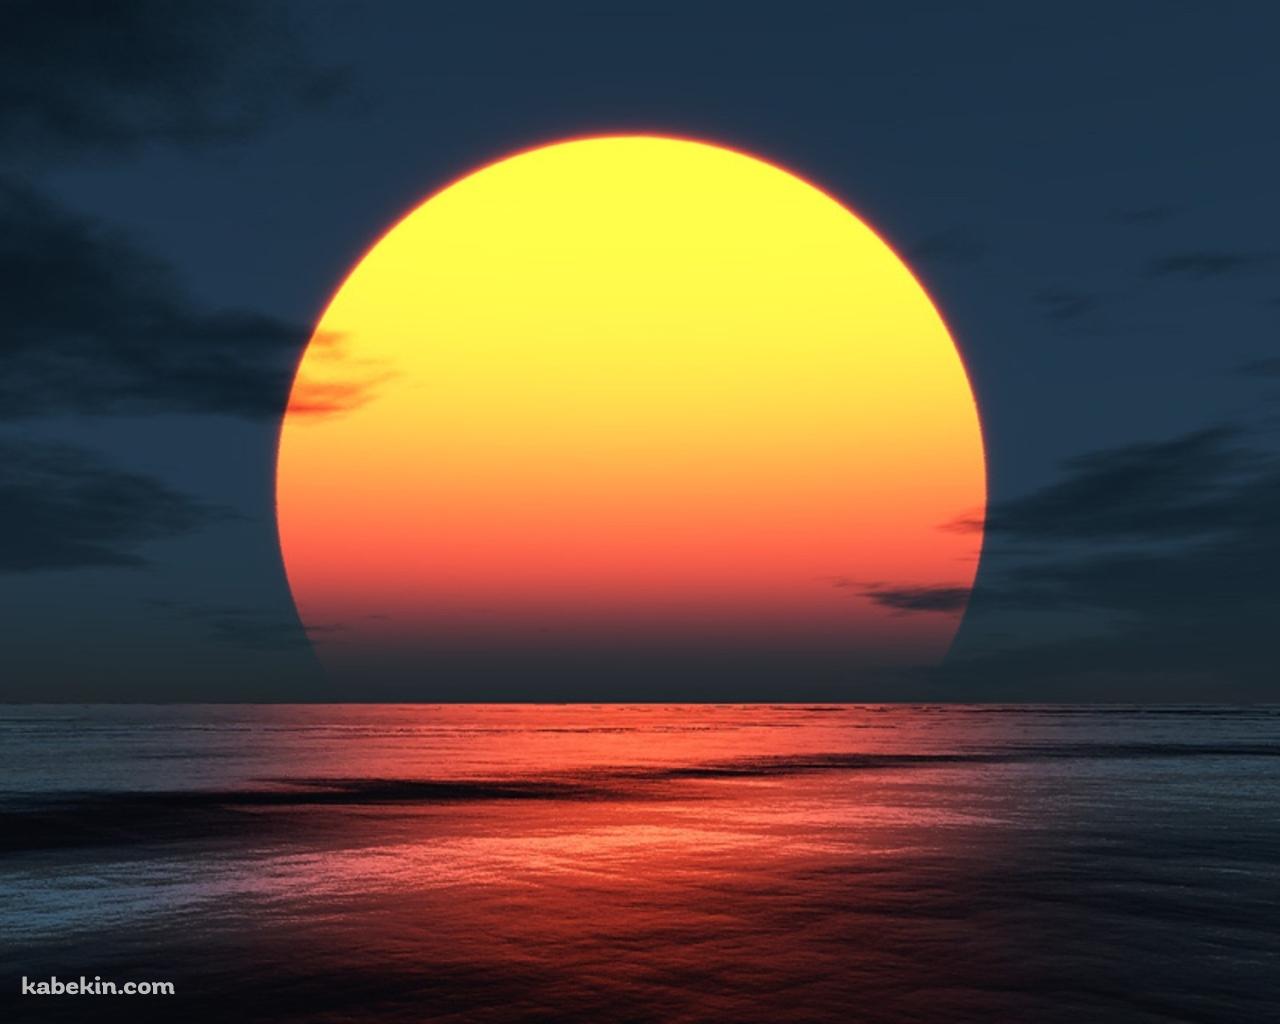 浜辺から見る夕日の壁紙(1280px x 1024px) 高画質 PC・デスクトップ用